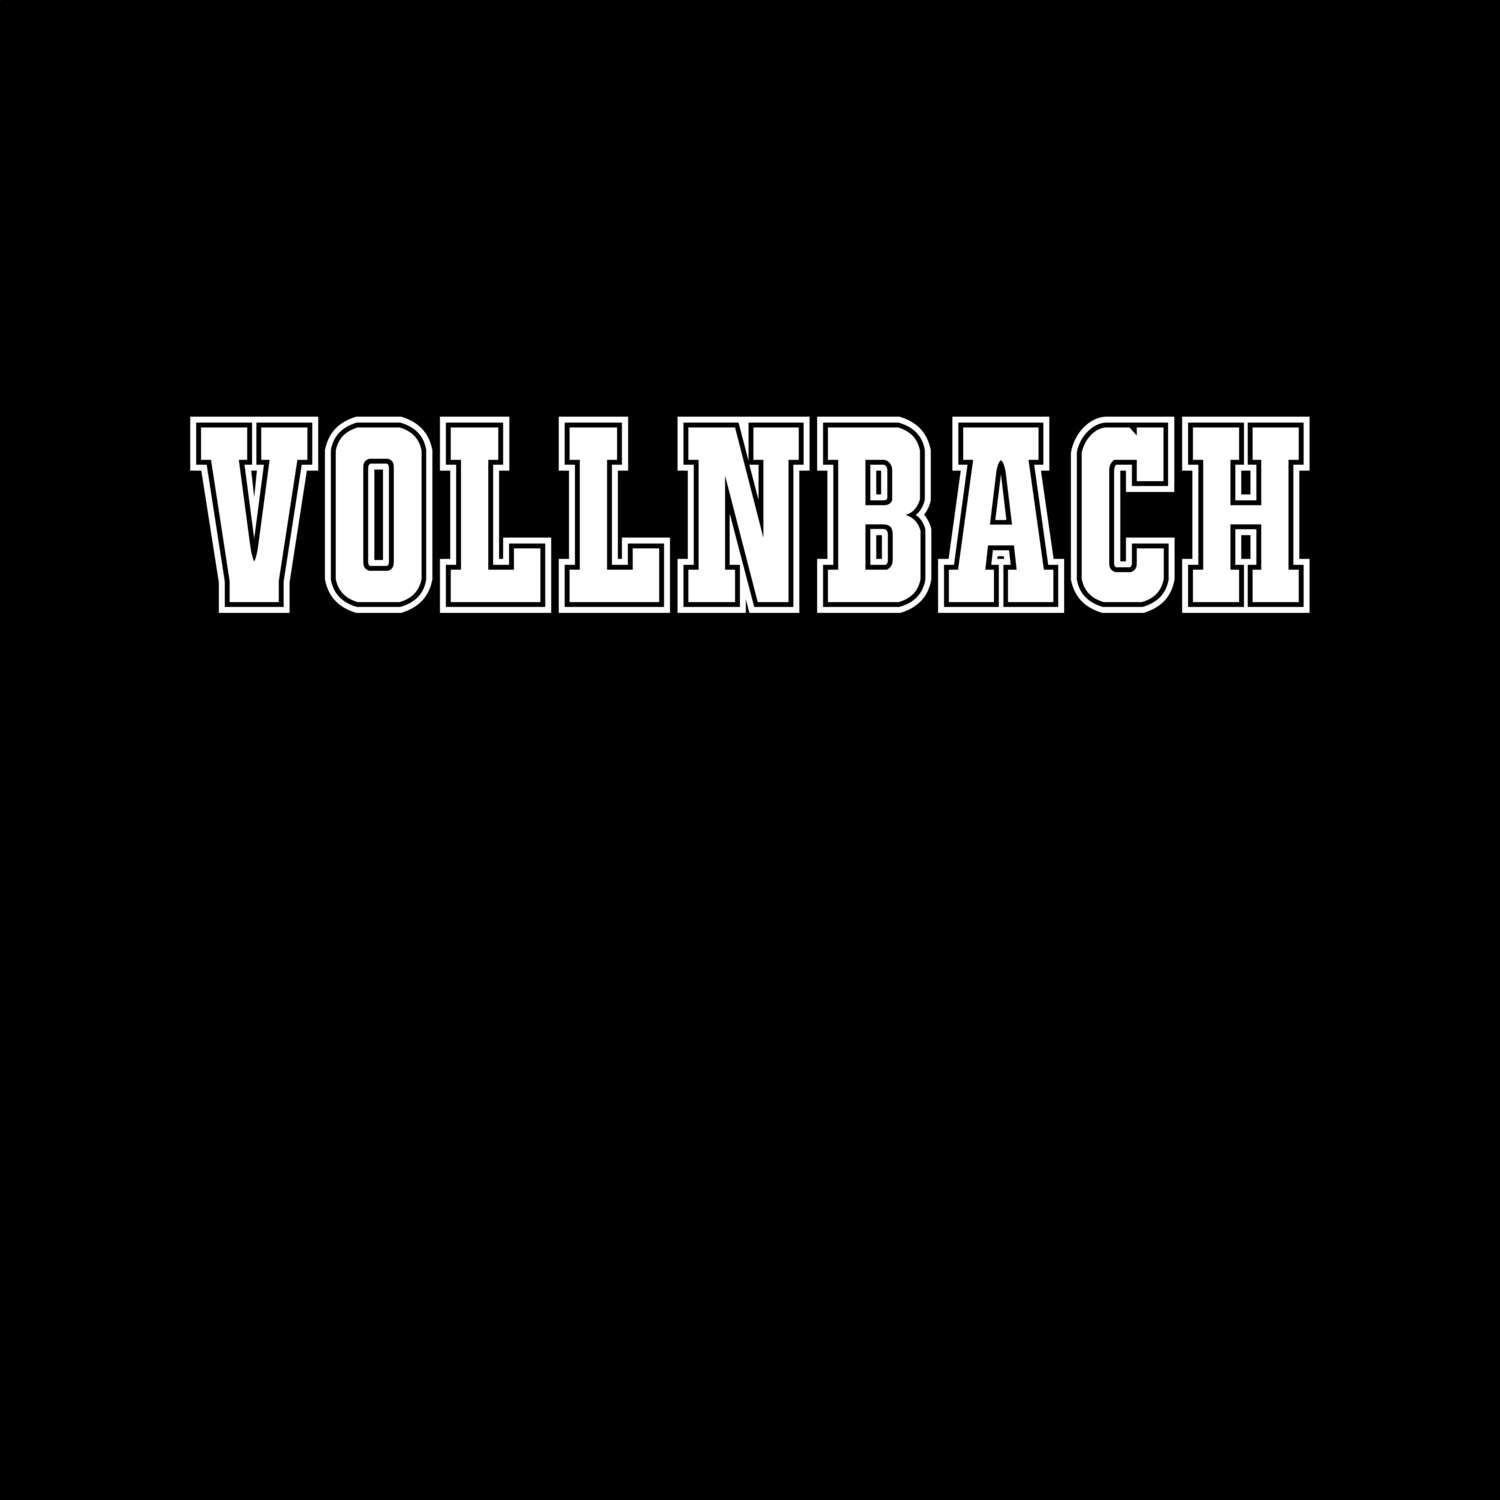 Vollnbach T-Shirt »Classic«